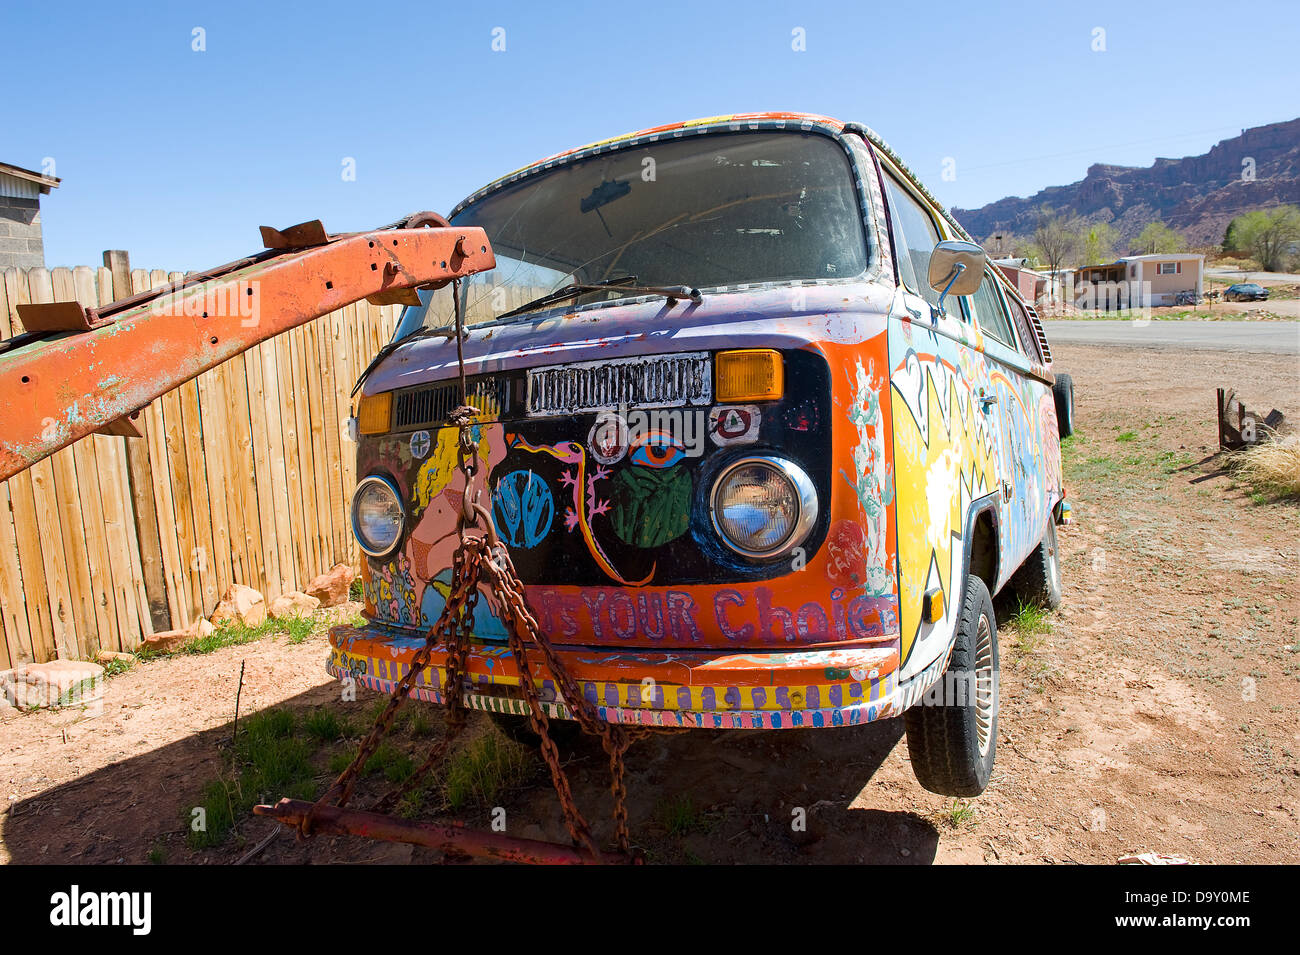 Painted Volkswagen camper van held up by breakdown truck, Moab, Utah, USA. Stock Photo